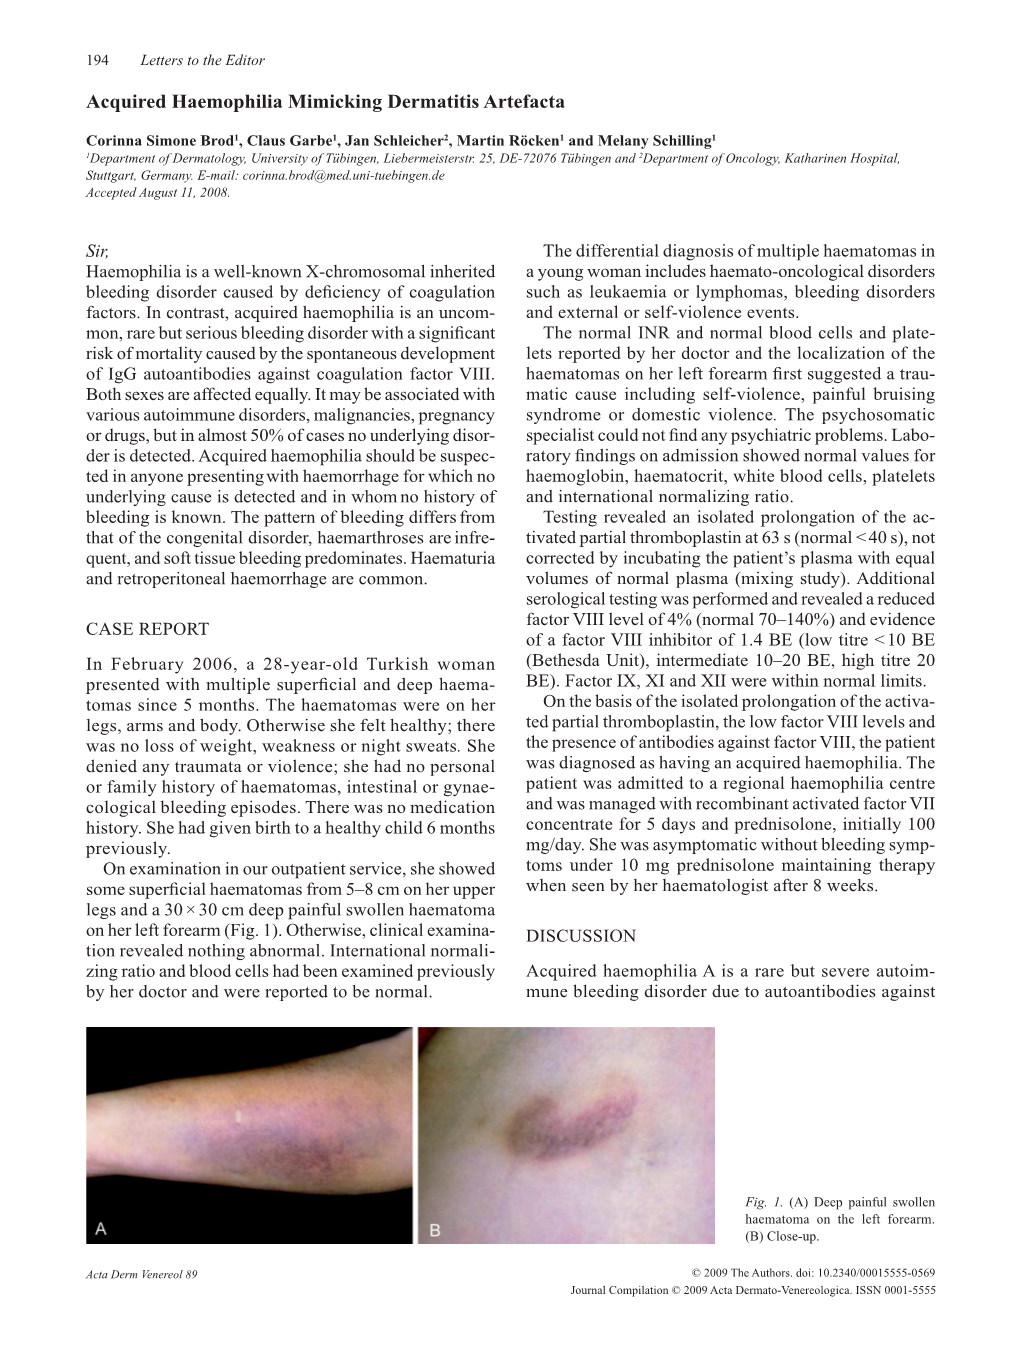 Acquired Haemophilia Mimicking Dermatitis Artefacta